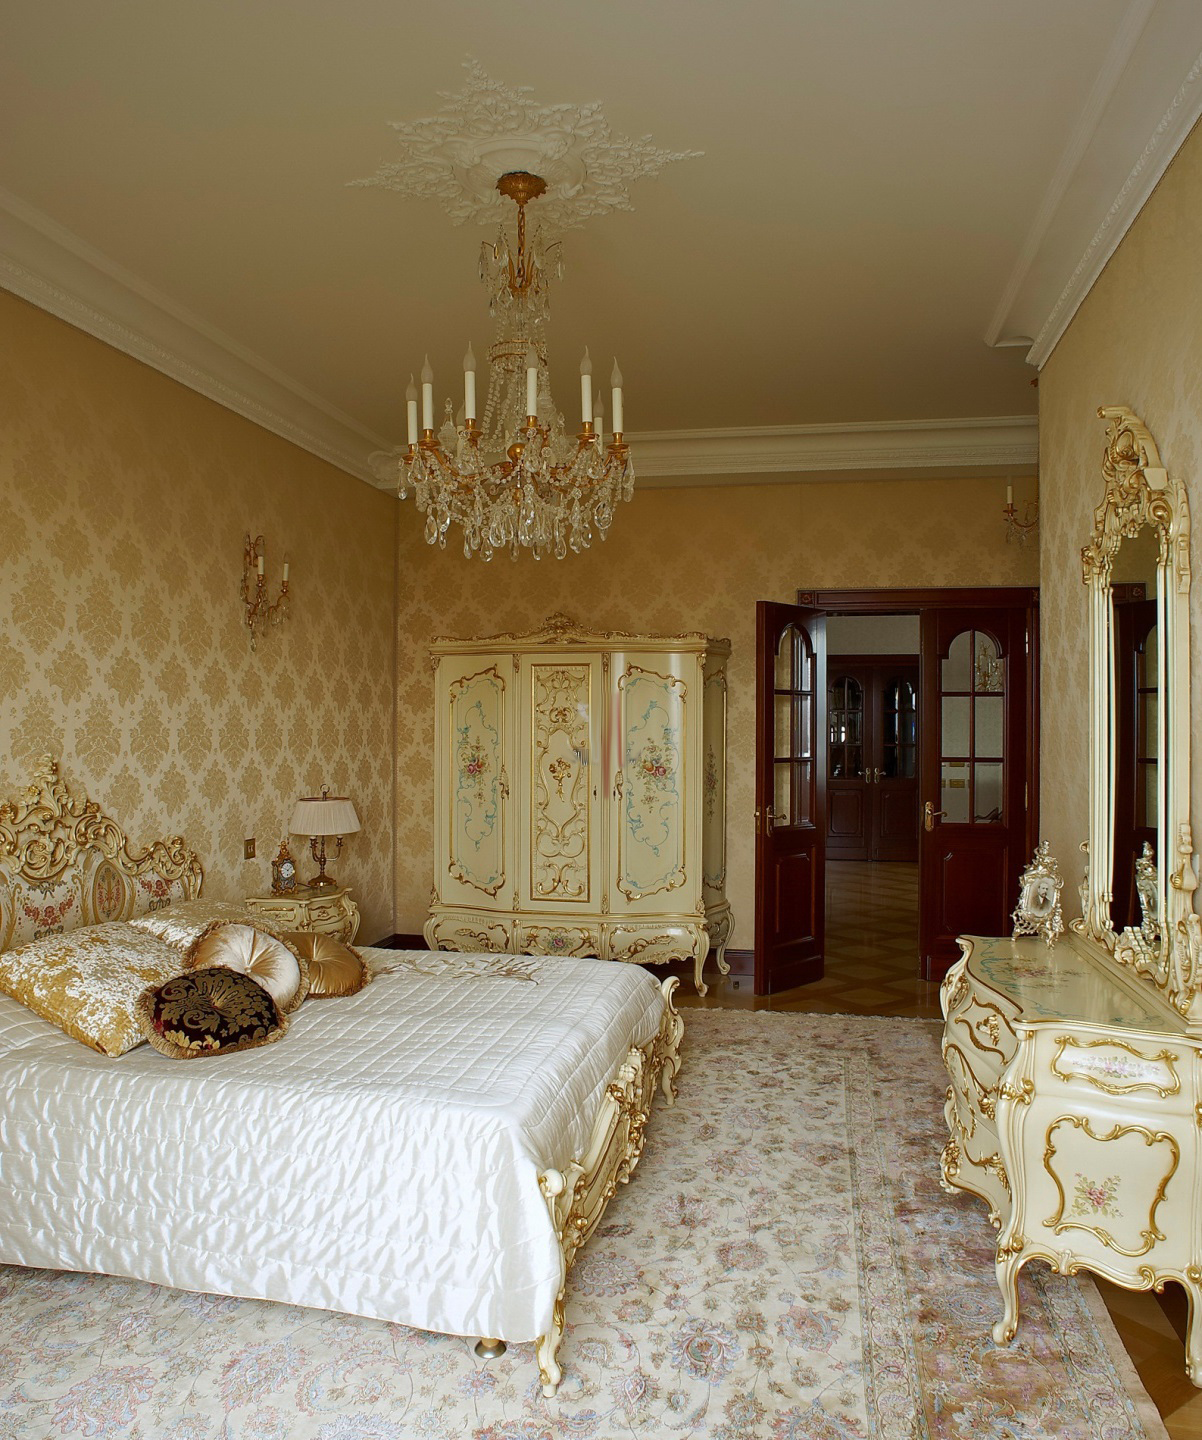 Золотисто-бежевая мебель в спальне в стиле барокко